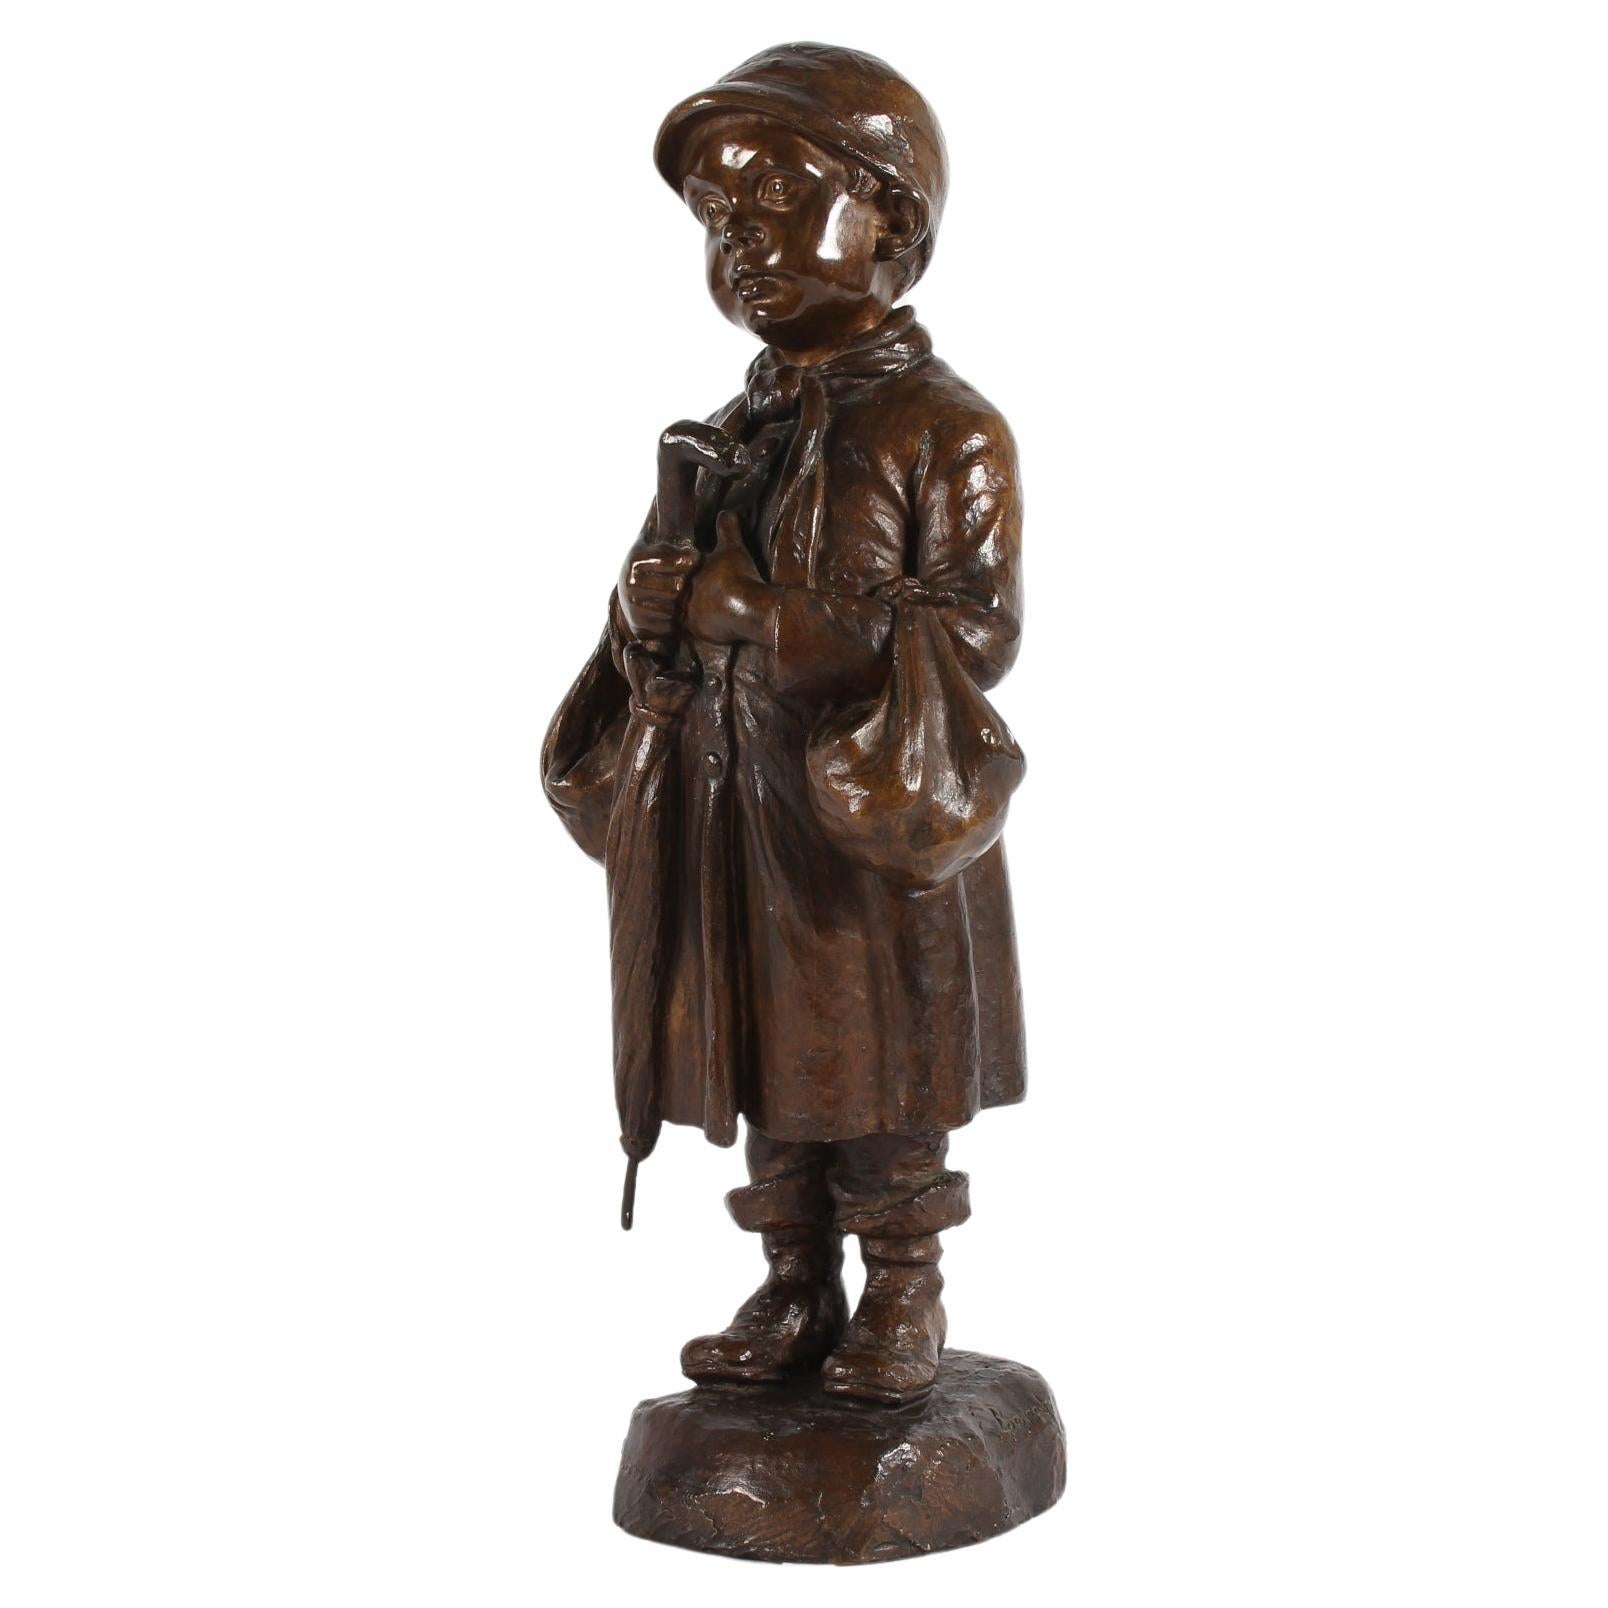 Grande figurine de l'artiste et sculpteur danois Elna Borch (1869-1950)
représentant un jeune garçon avec un parapluie. Elle est en bronze à patine brune.
Fabriqué vers les années 1940 ou 1950 par la fonderie de bronze L.A. Rasmussen à